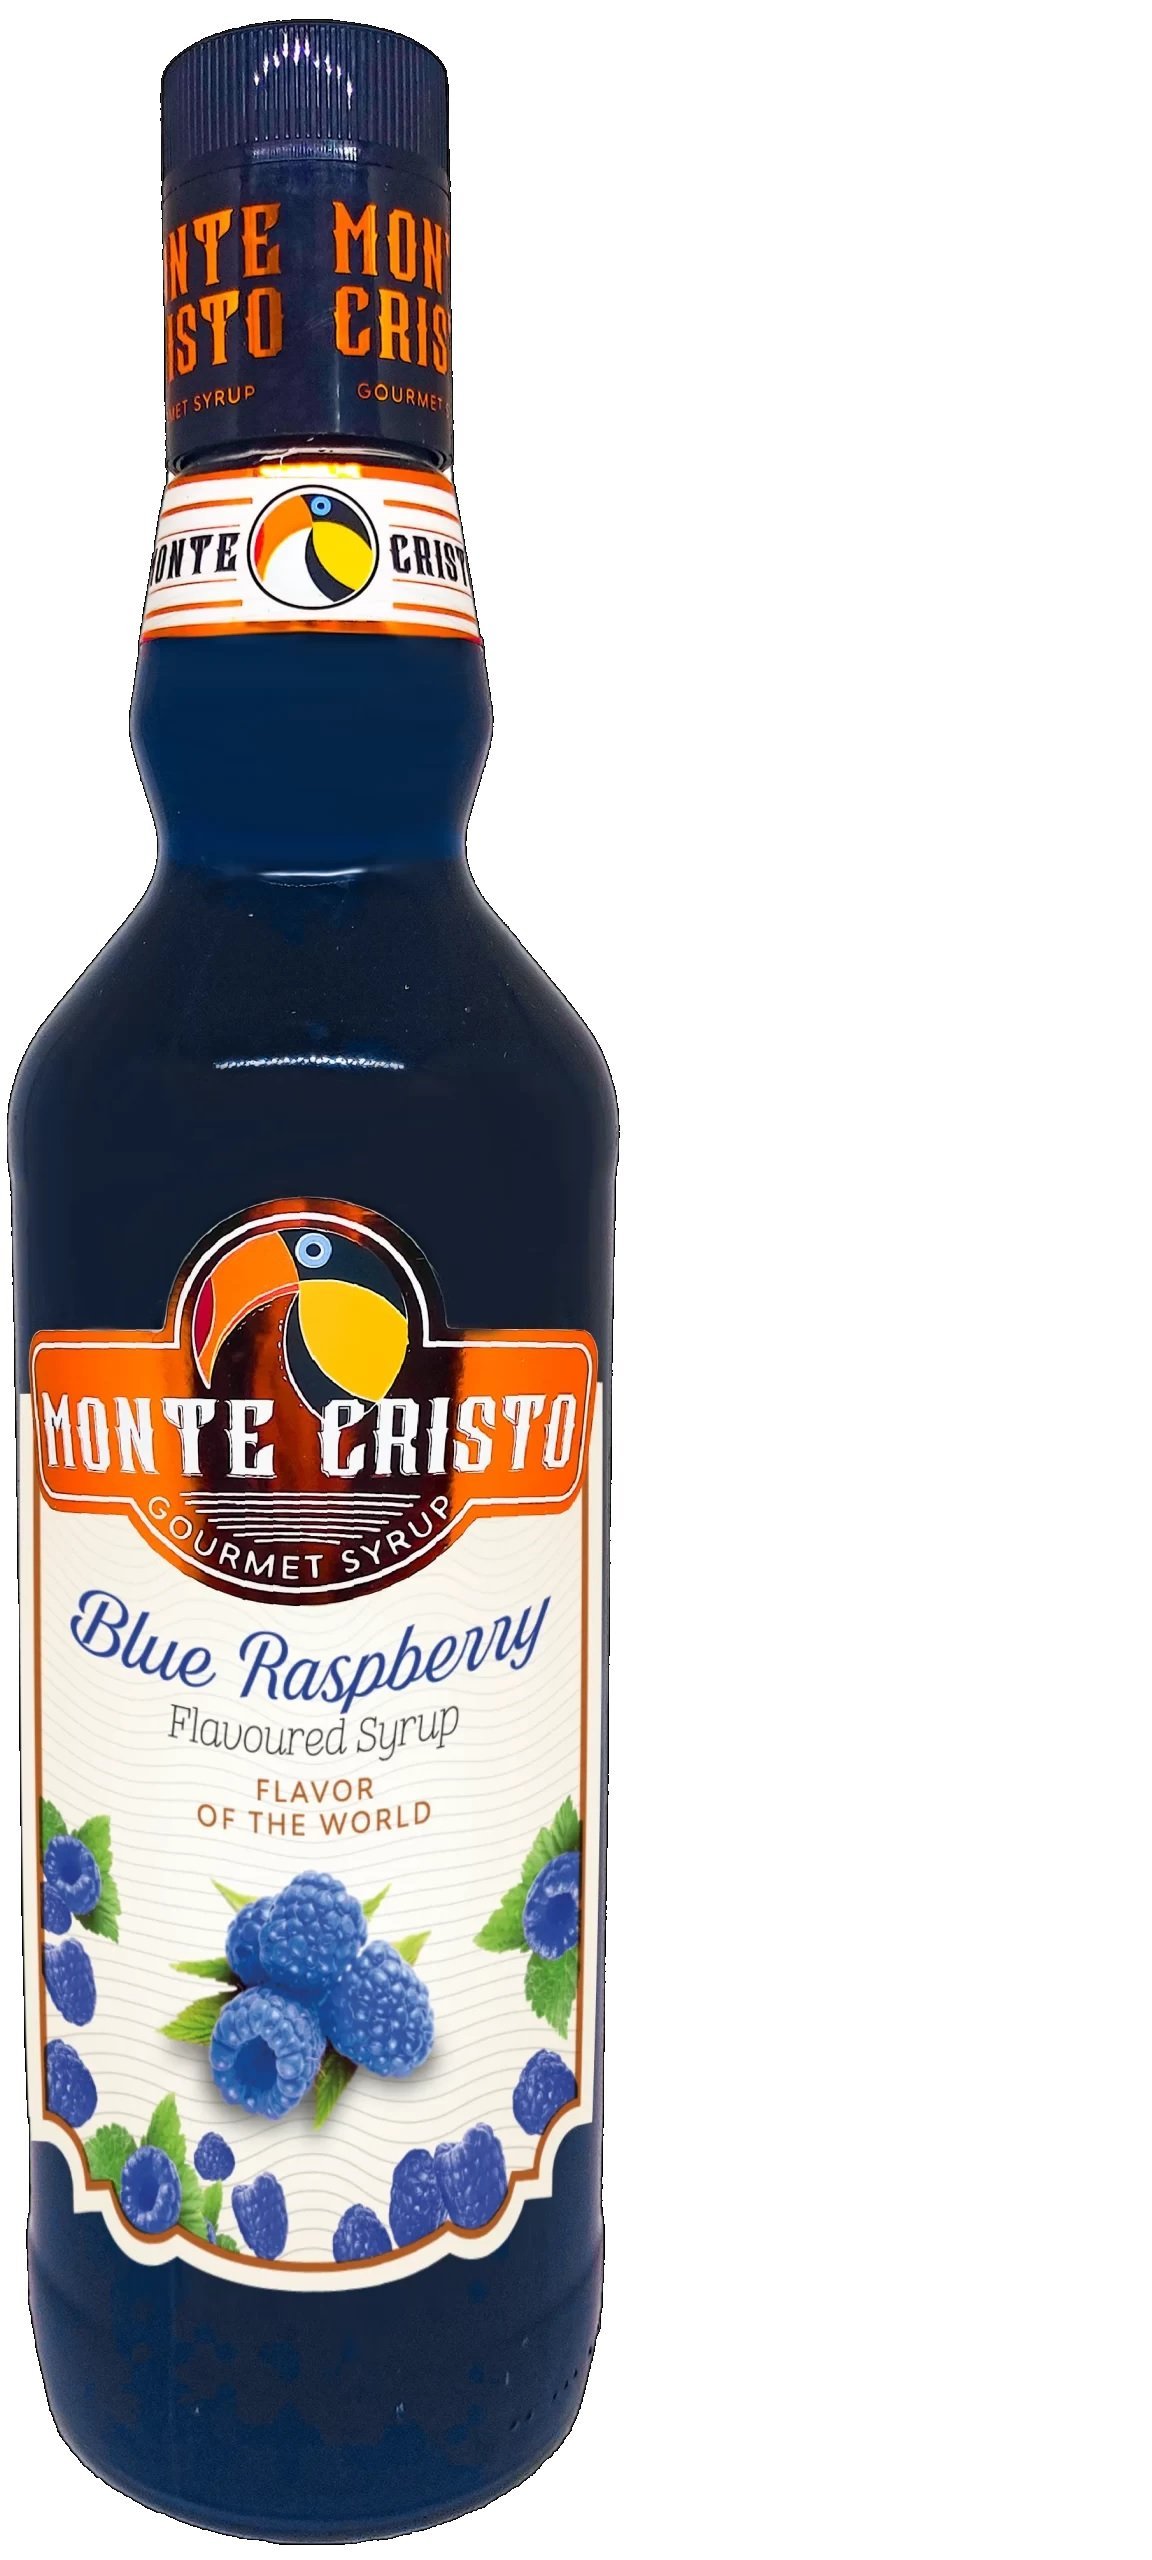 Monte Cristo Mavi Frambuaz (Blue Raspberry) Aromalı Şurup 700 ml.